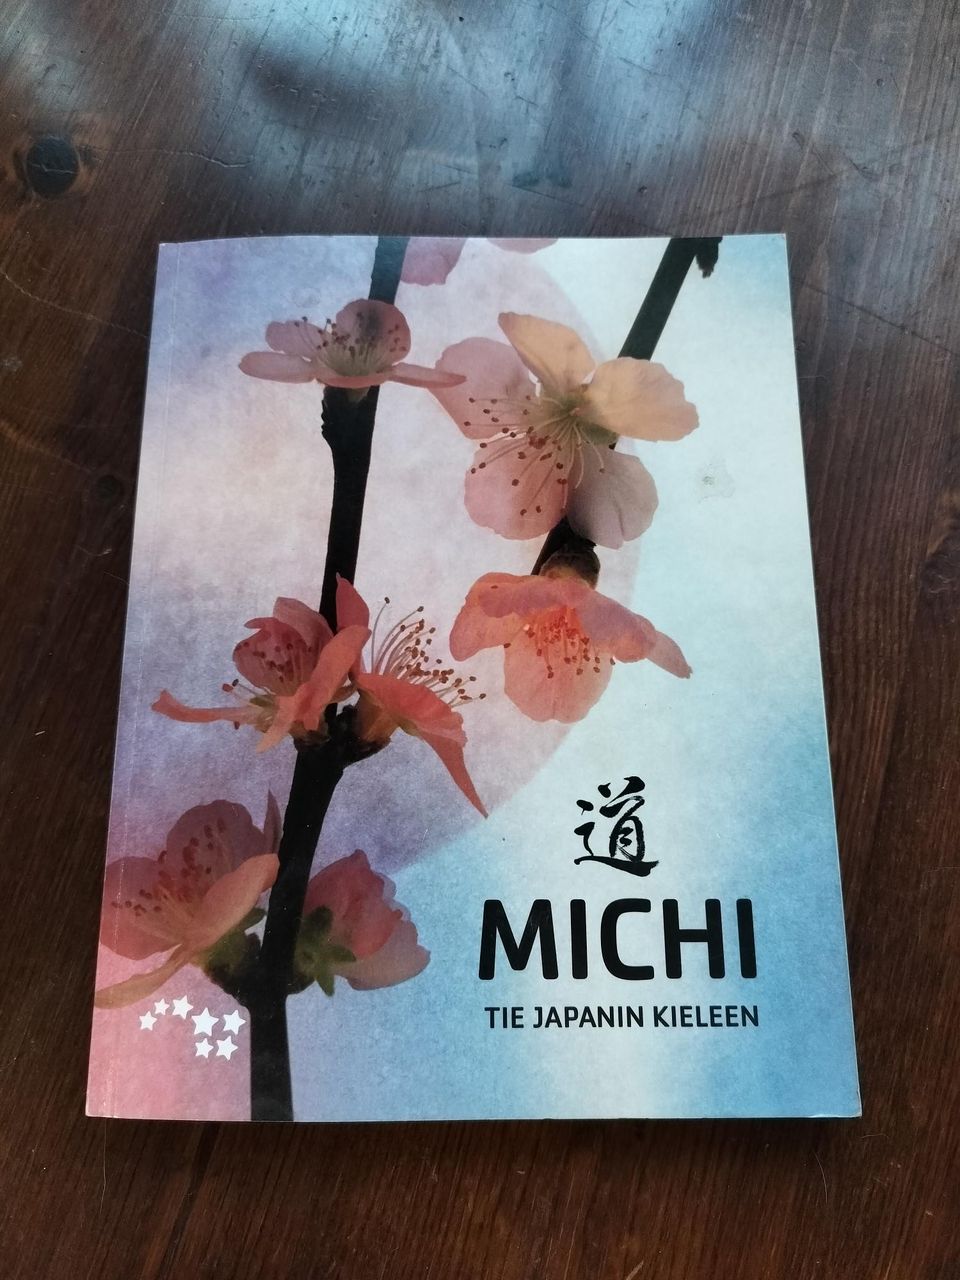 Michi, tie japanin kieleen